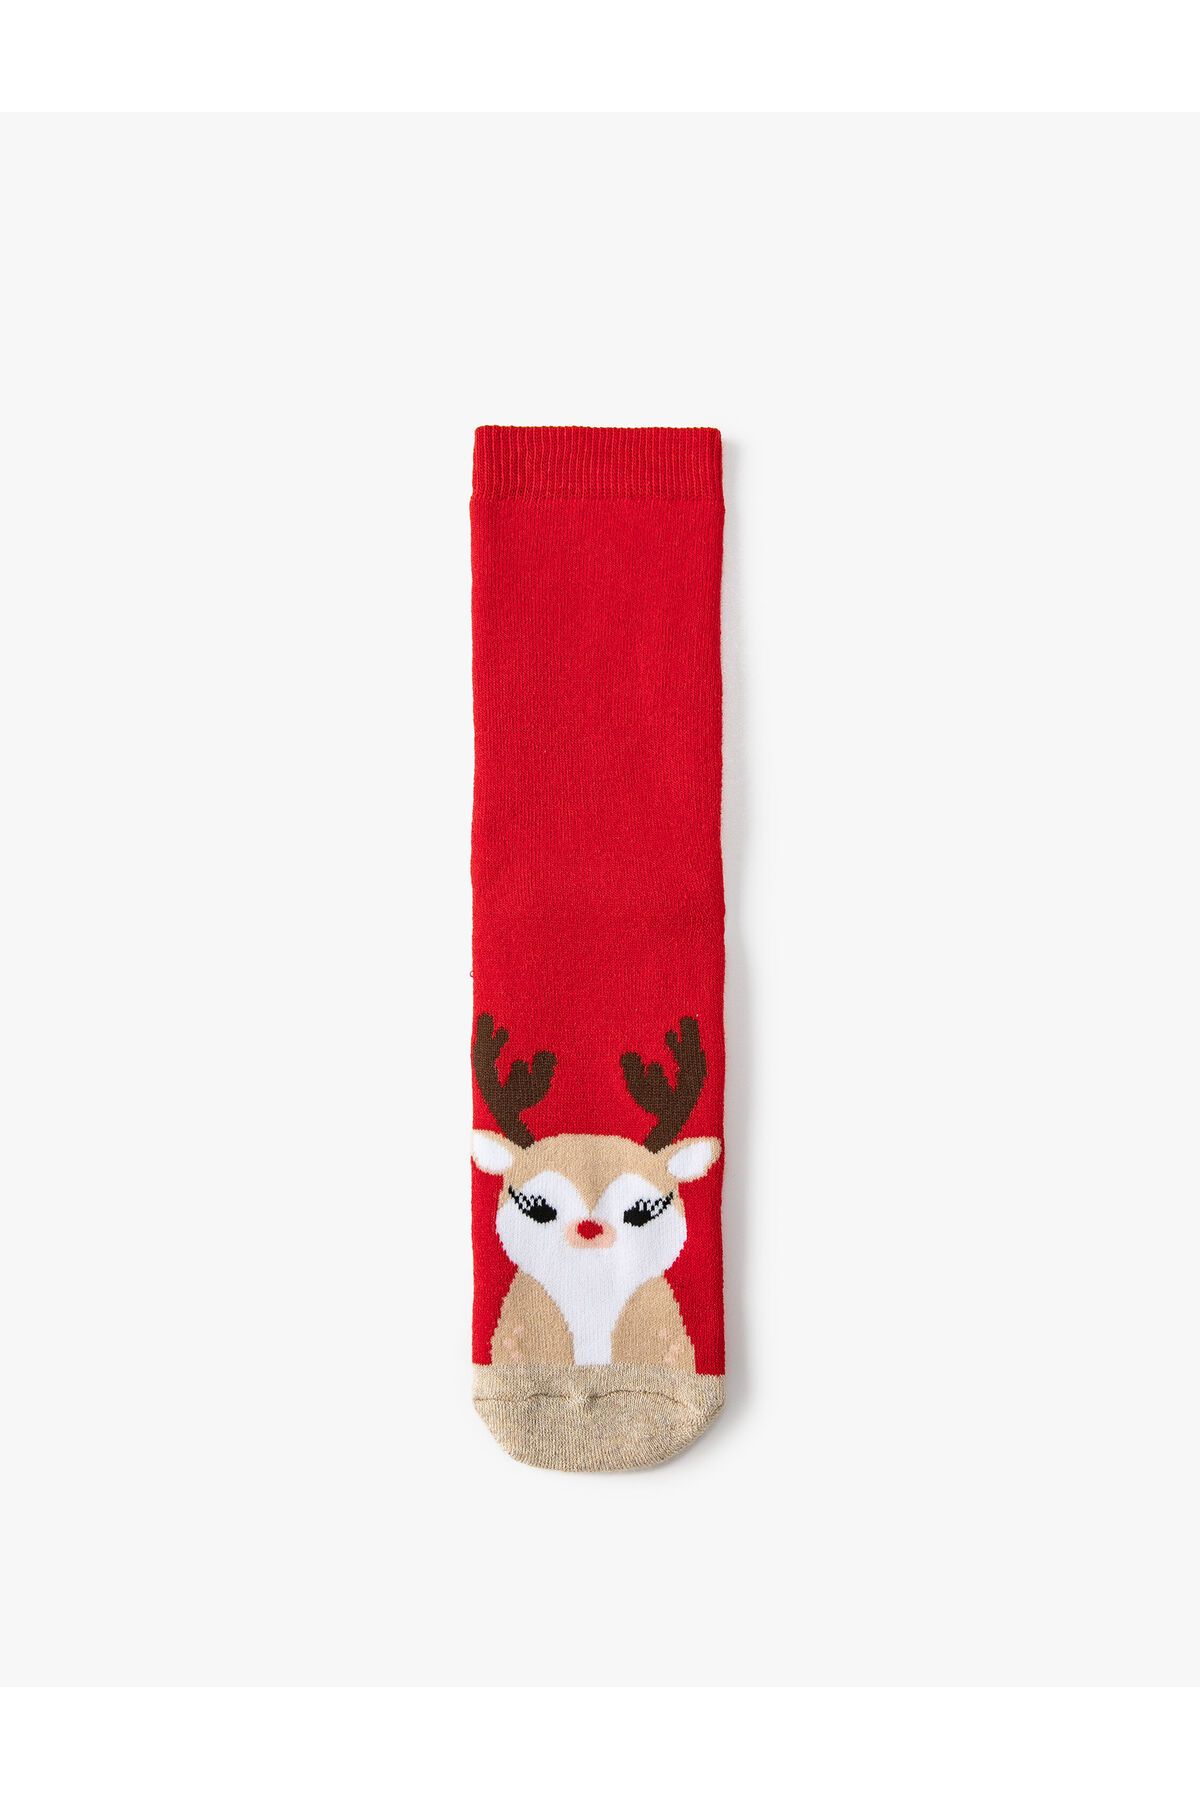 Koton Yılbaşı Desenli Havlu Çorap